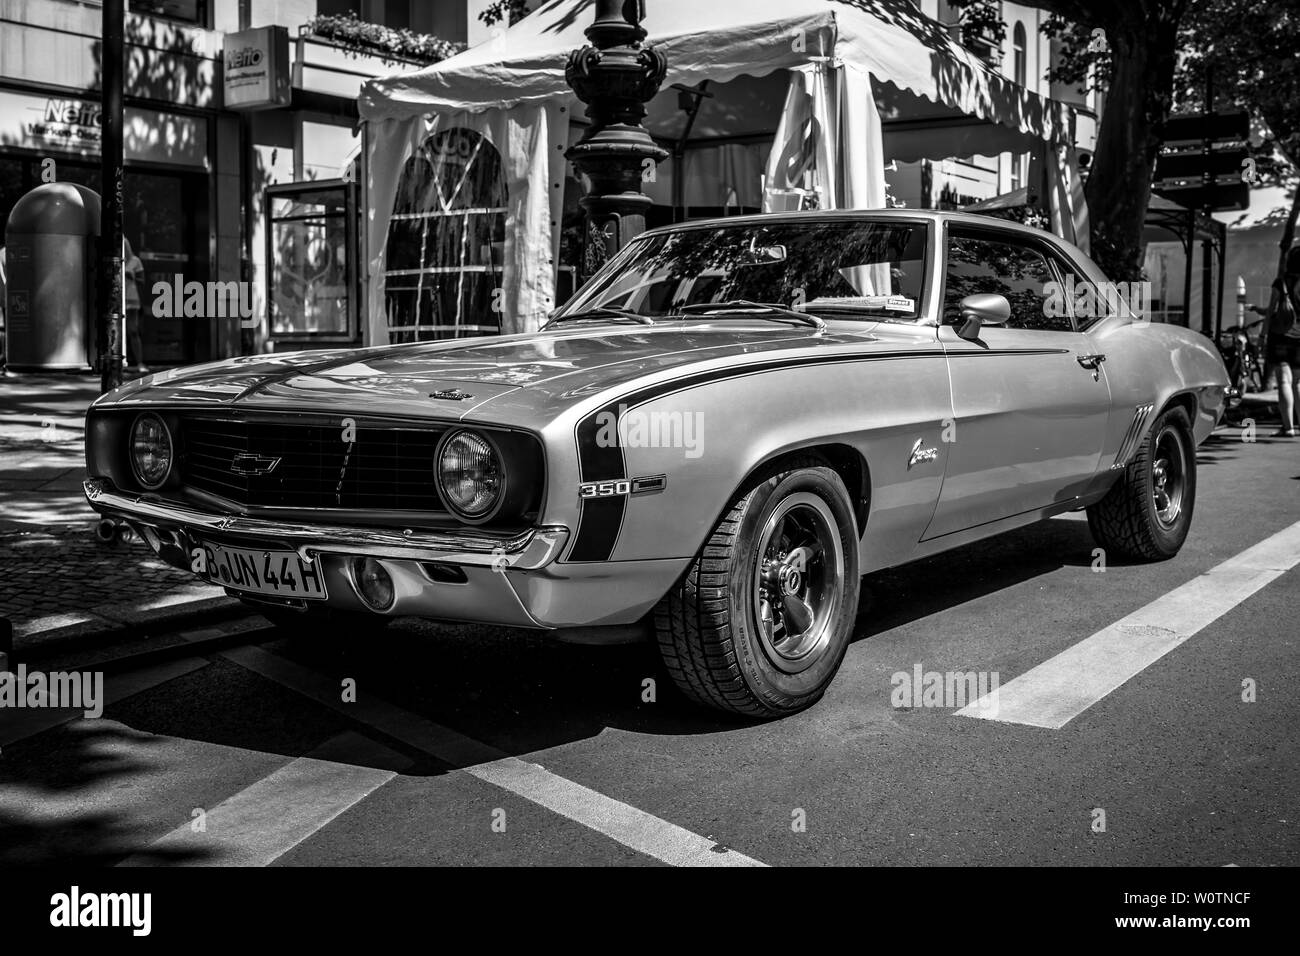 1969 camaro Imágenes de stock en blanco y negro - Alamy